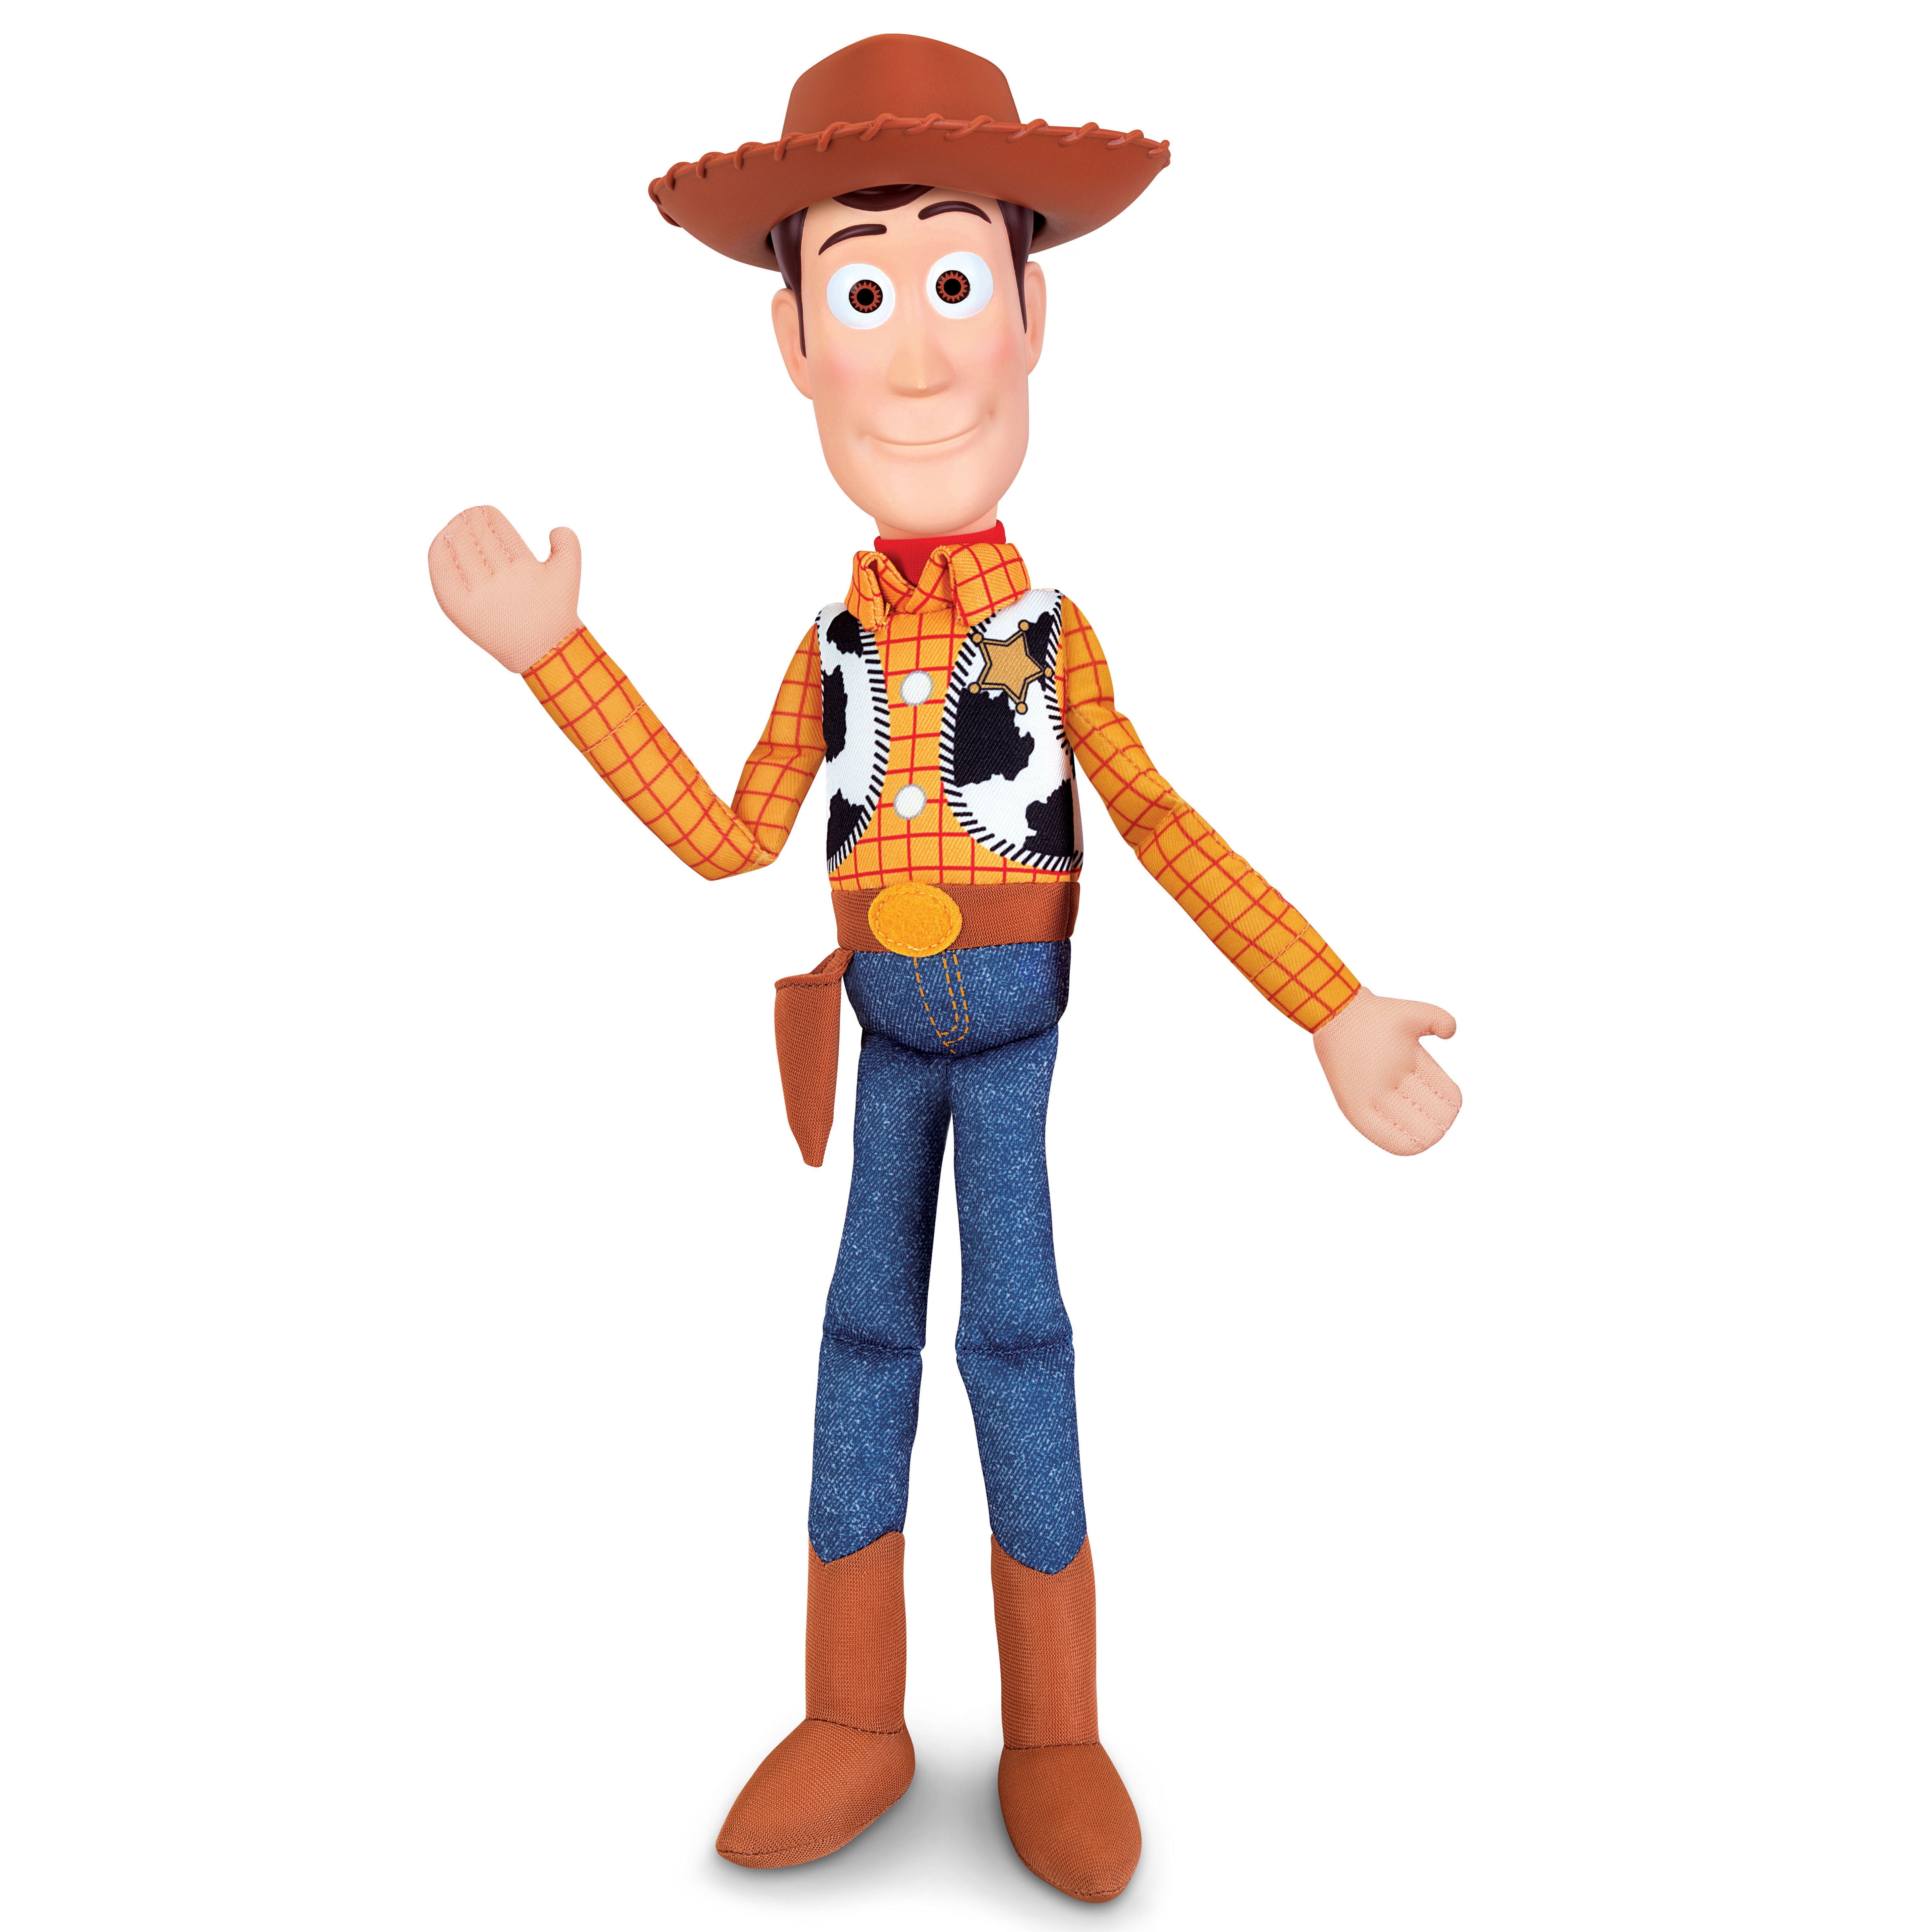 Disney Pixar Toy Story 16" Sheriff Woody Plush Toy - Walmart.com